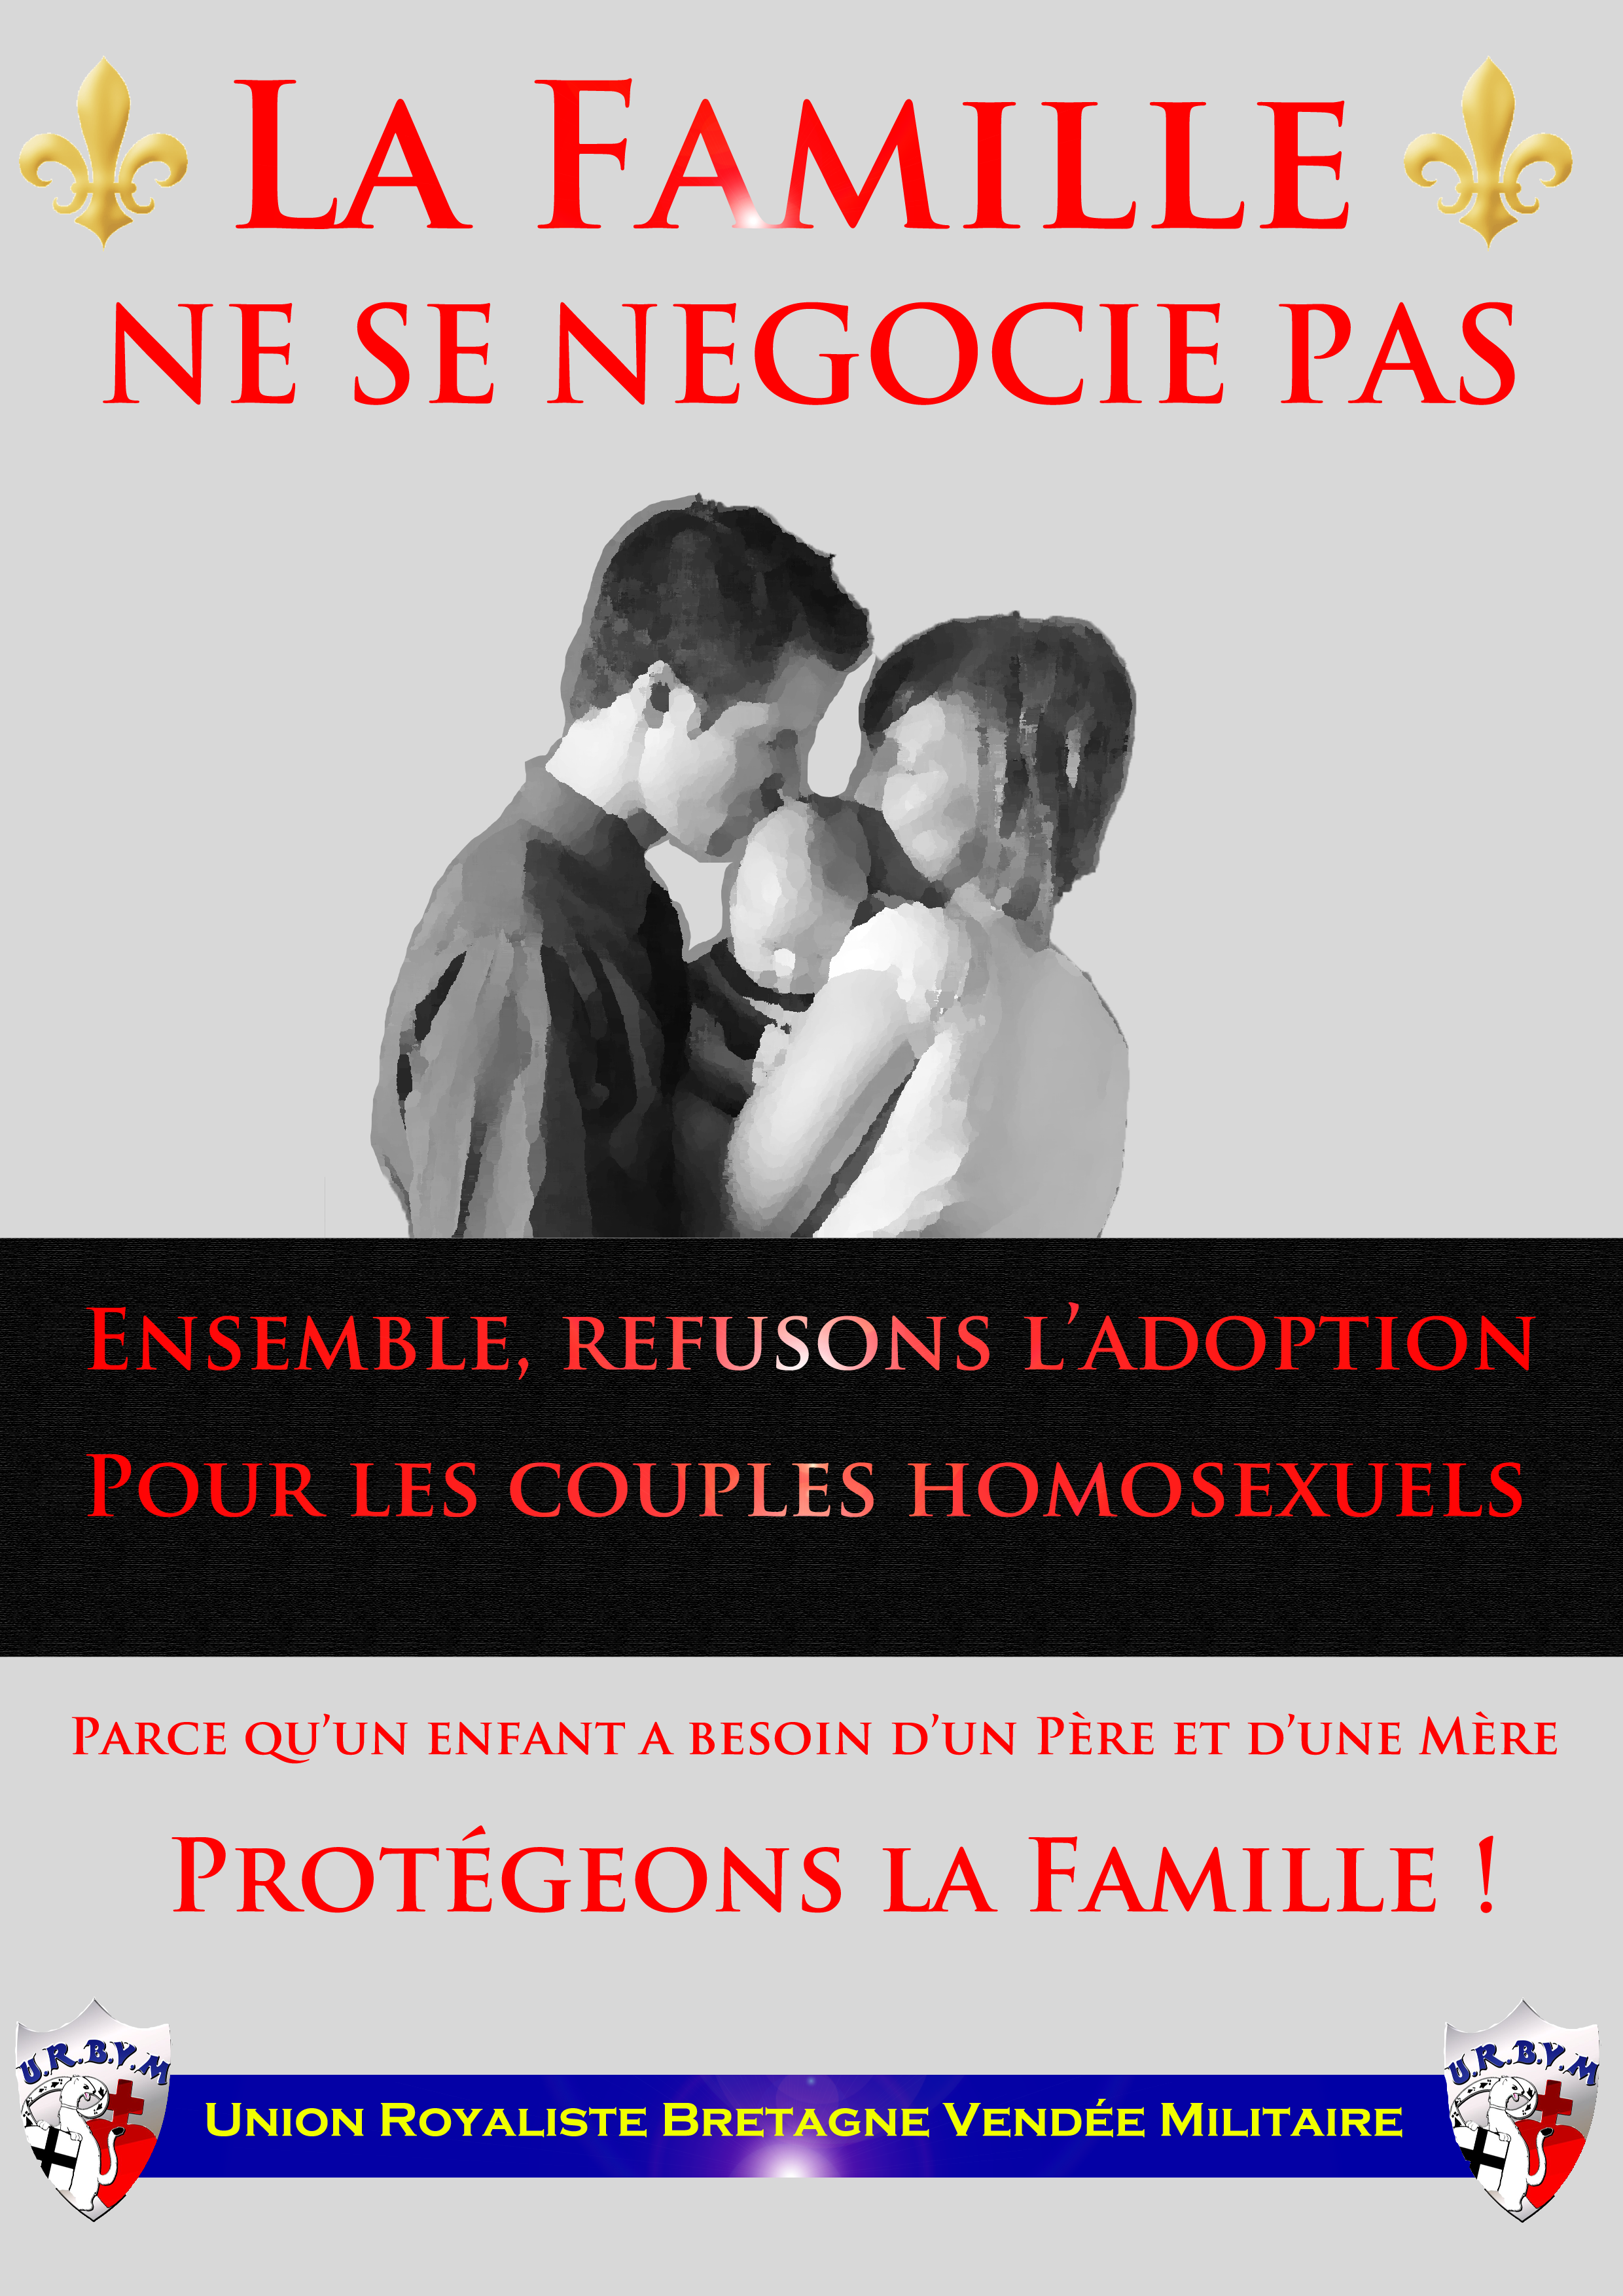 Affiche contre le mariage homosexuel et l'homoparentalité